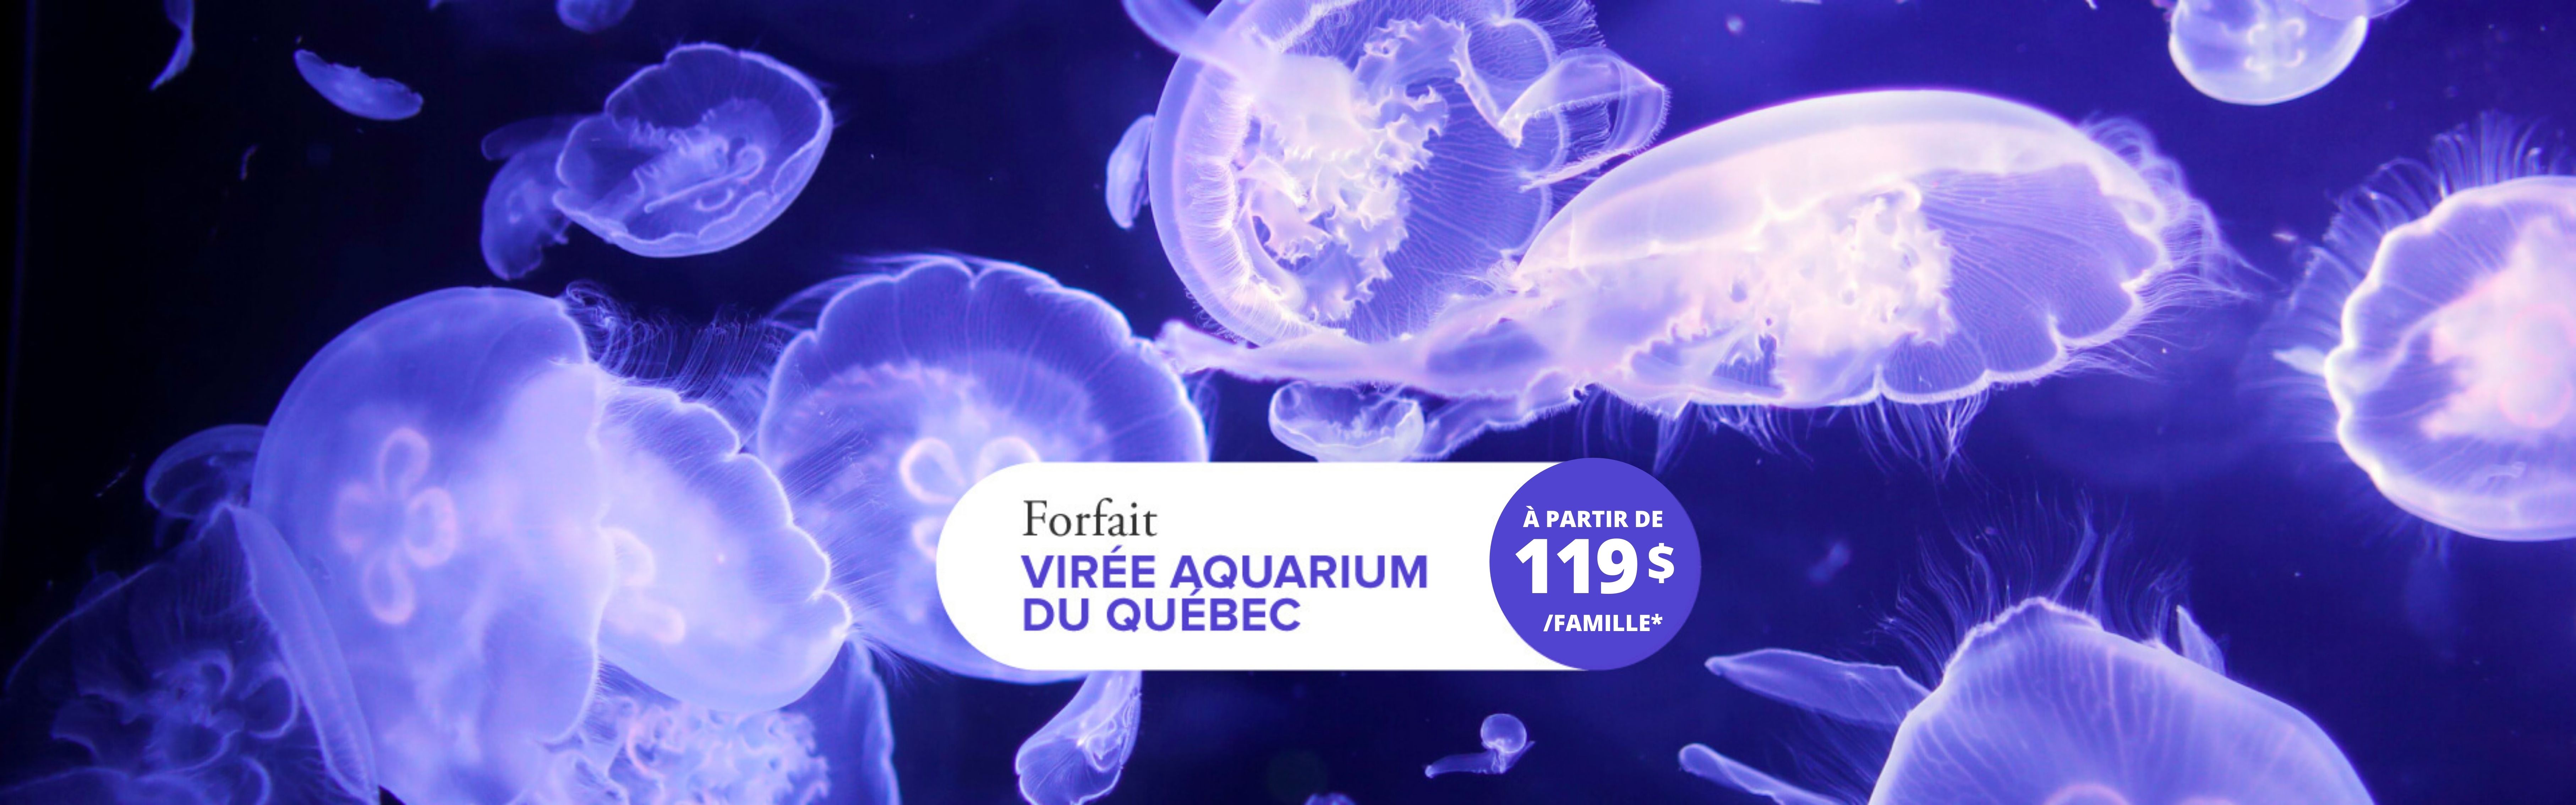 Virée fascinante à l'Aquarium du Québec 